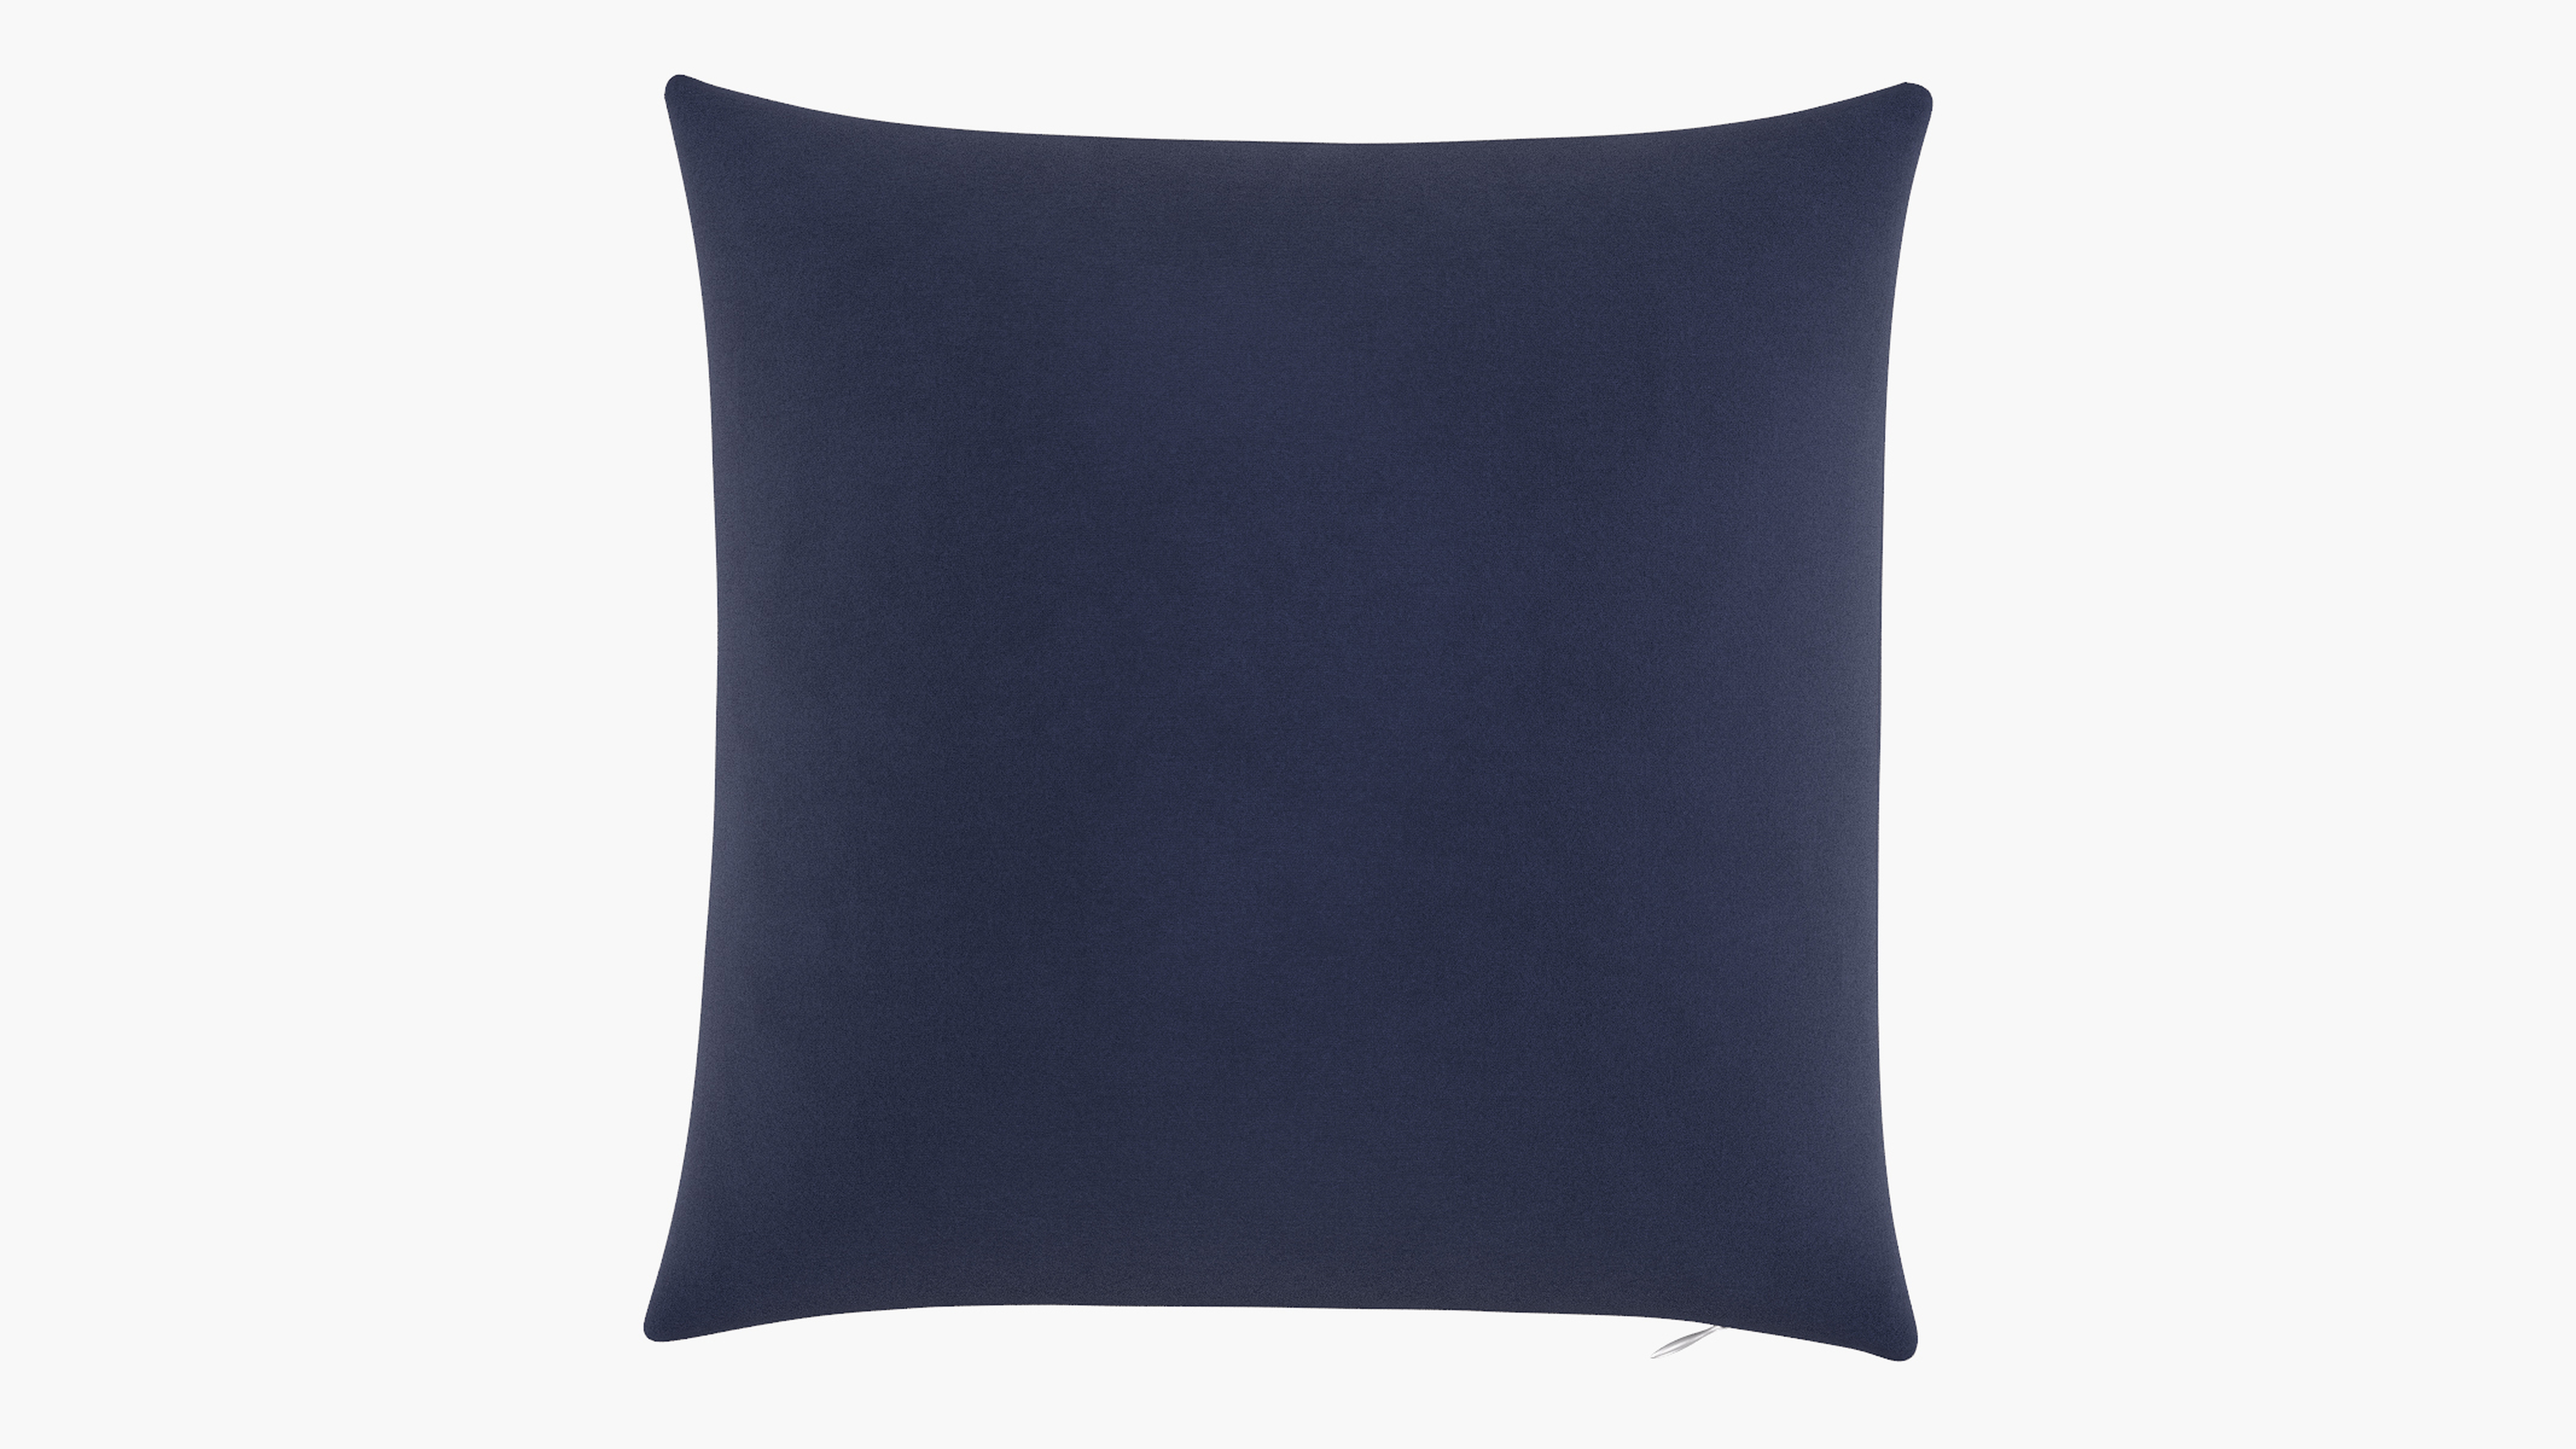 Throw Pillow 18", Navy Velvet, 18" x 18" - The Inside